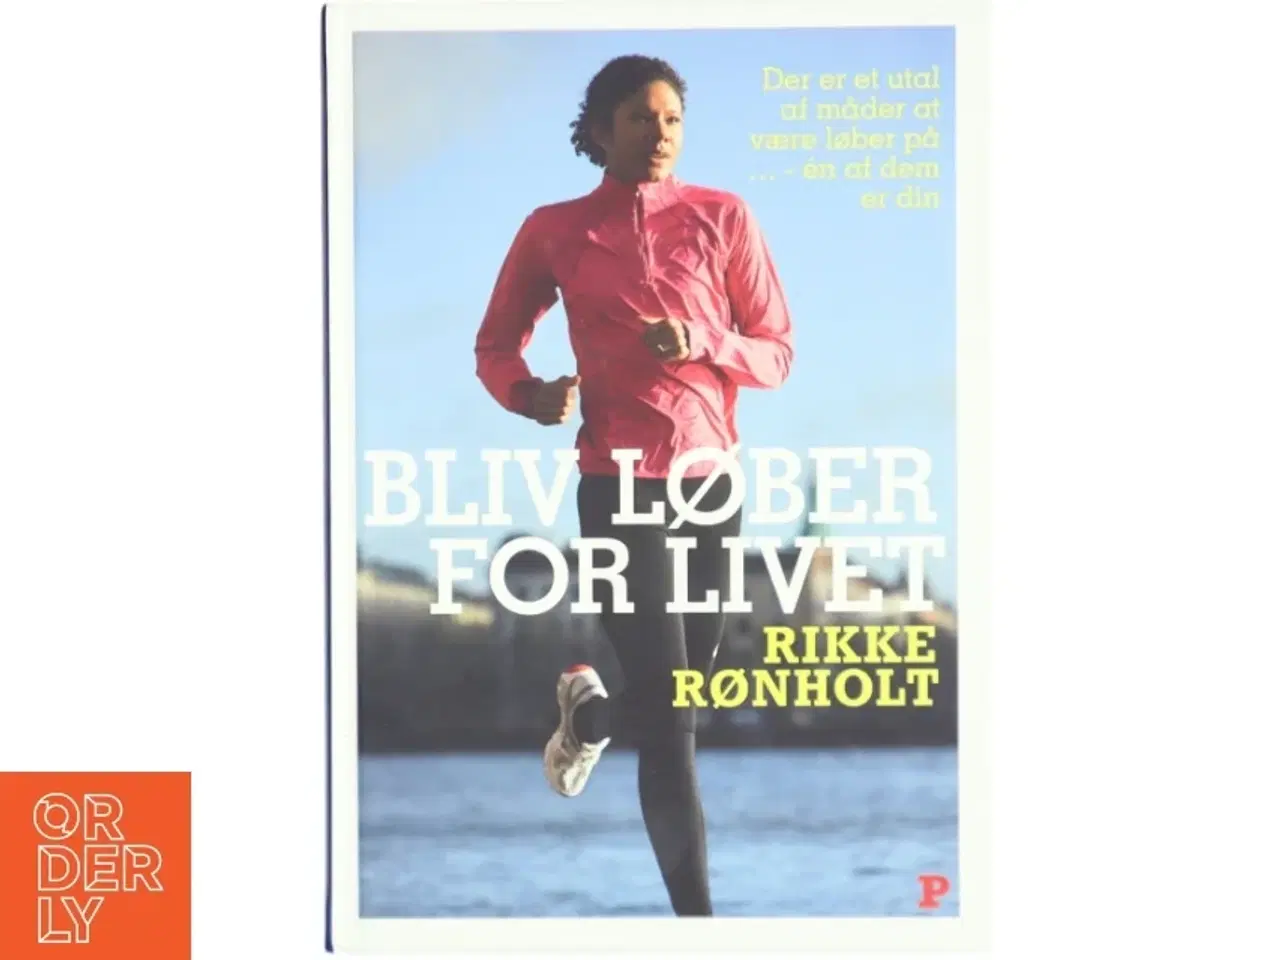 Billede 1 - Bliv løber for livet af Rikke Rønholt